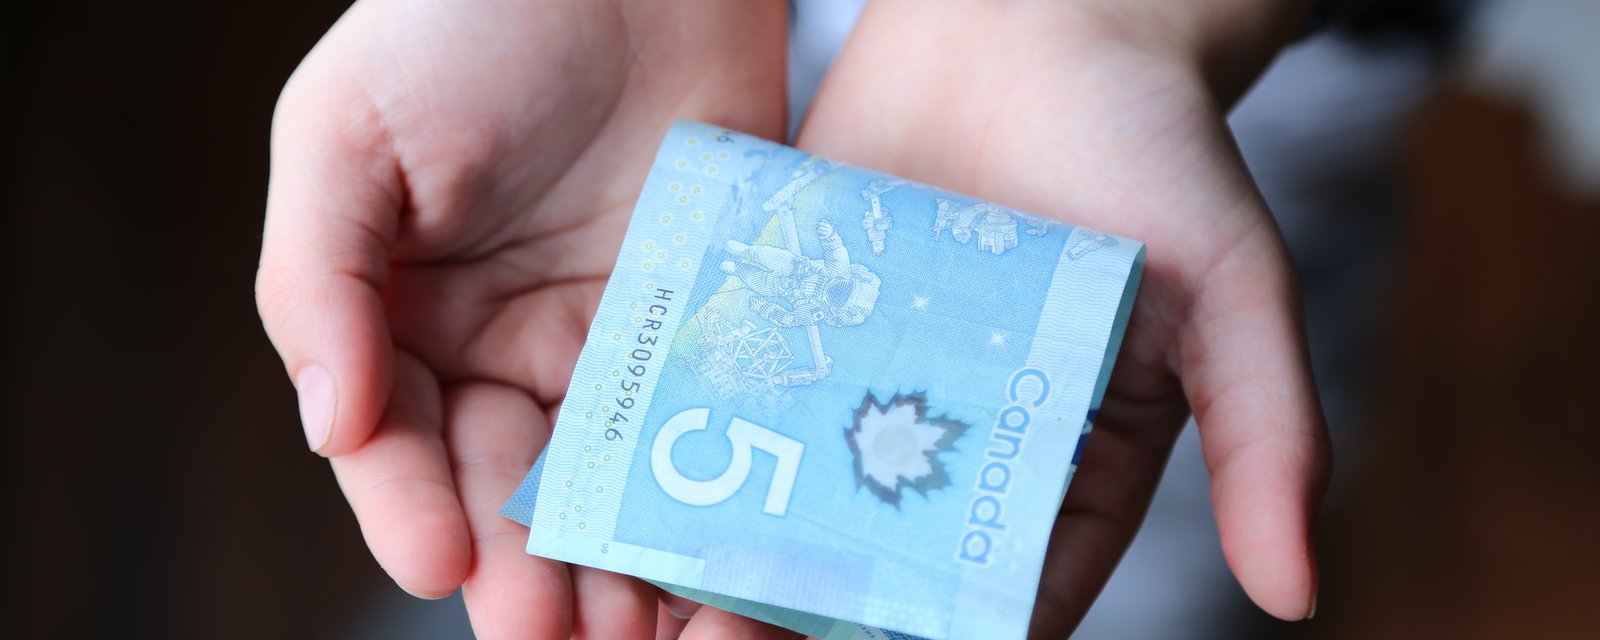 Beaucoup de Québécois doivent vivre de paie en paie sans pouvoir économiser